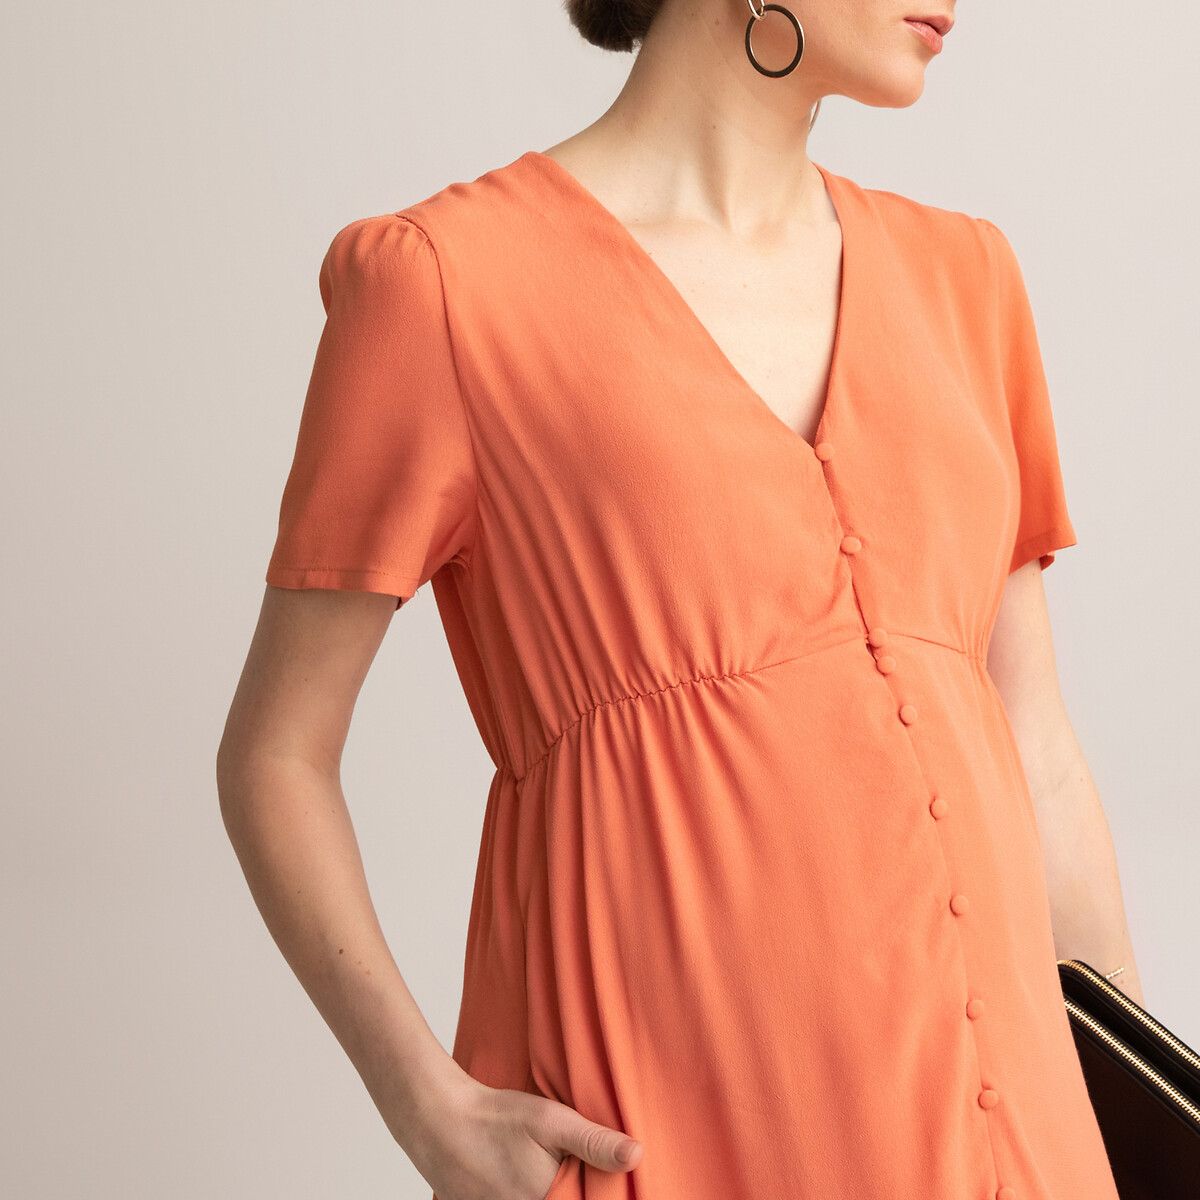 Платье LaRedoute Для периода беременности длинное вырез с короткими рукавами 36 (FR) - 42 (RUS) оранжевый, размер 36 (FR) - 42 (RUS) Для периода беременности длинное вырез с короткими рукавами 36 (FR) - 42 (RUS) оранжевый - фото 3